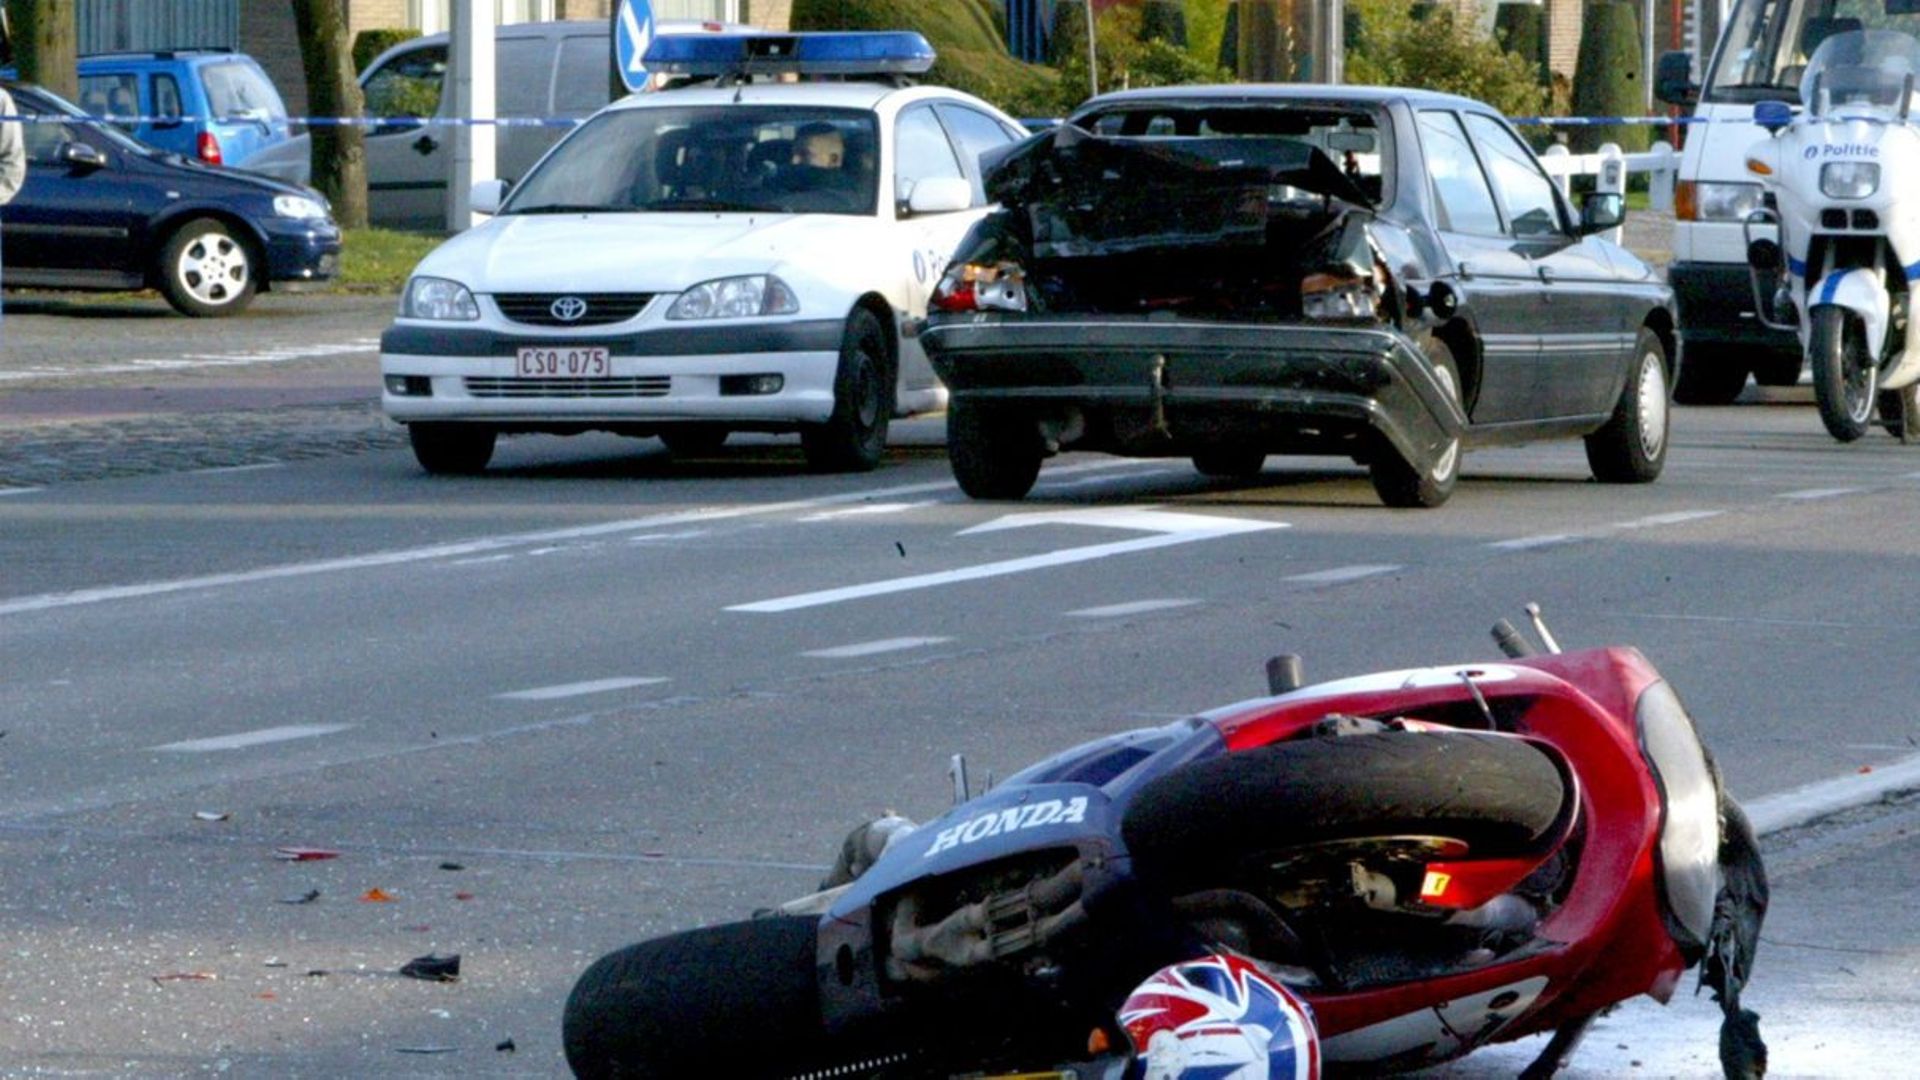 motos-un-accident-sur-trois-est-cause-par-une-perte-de-controle